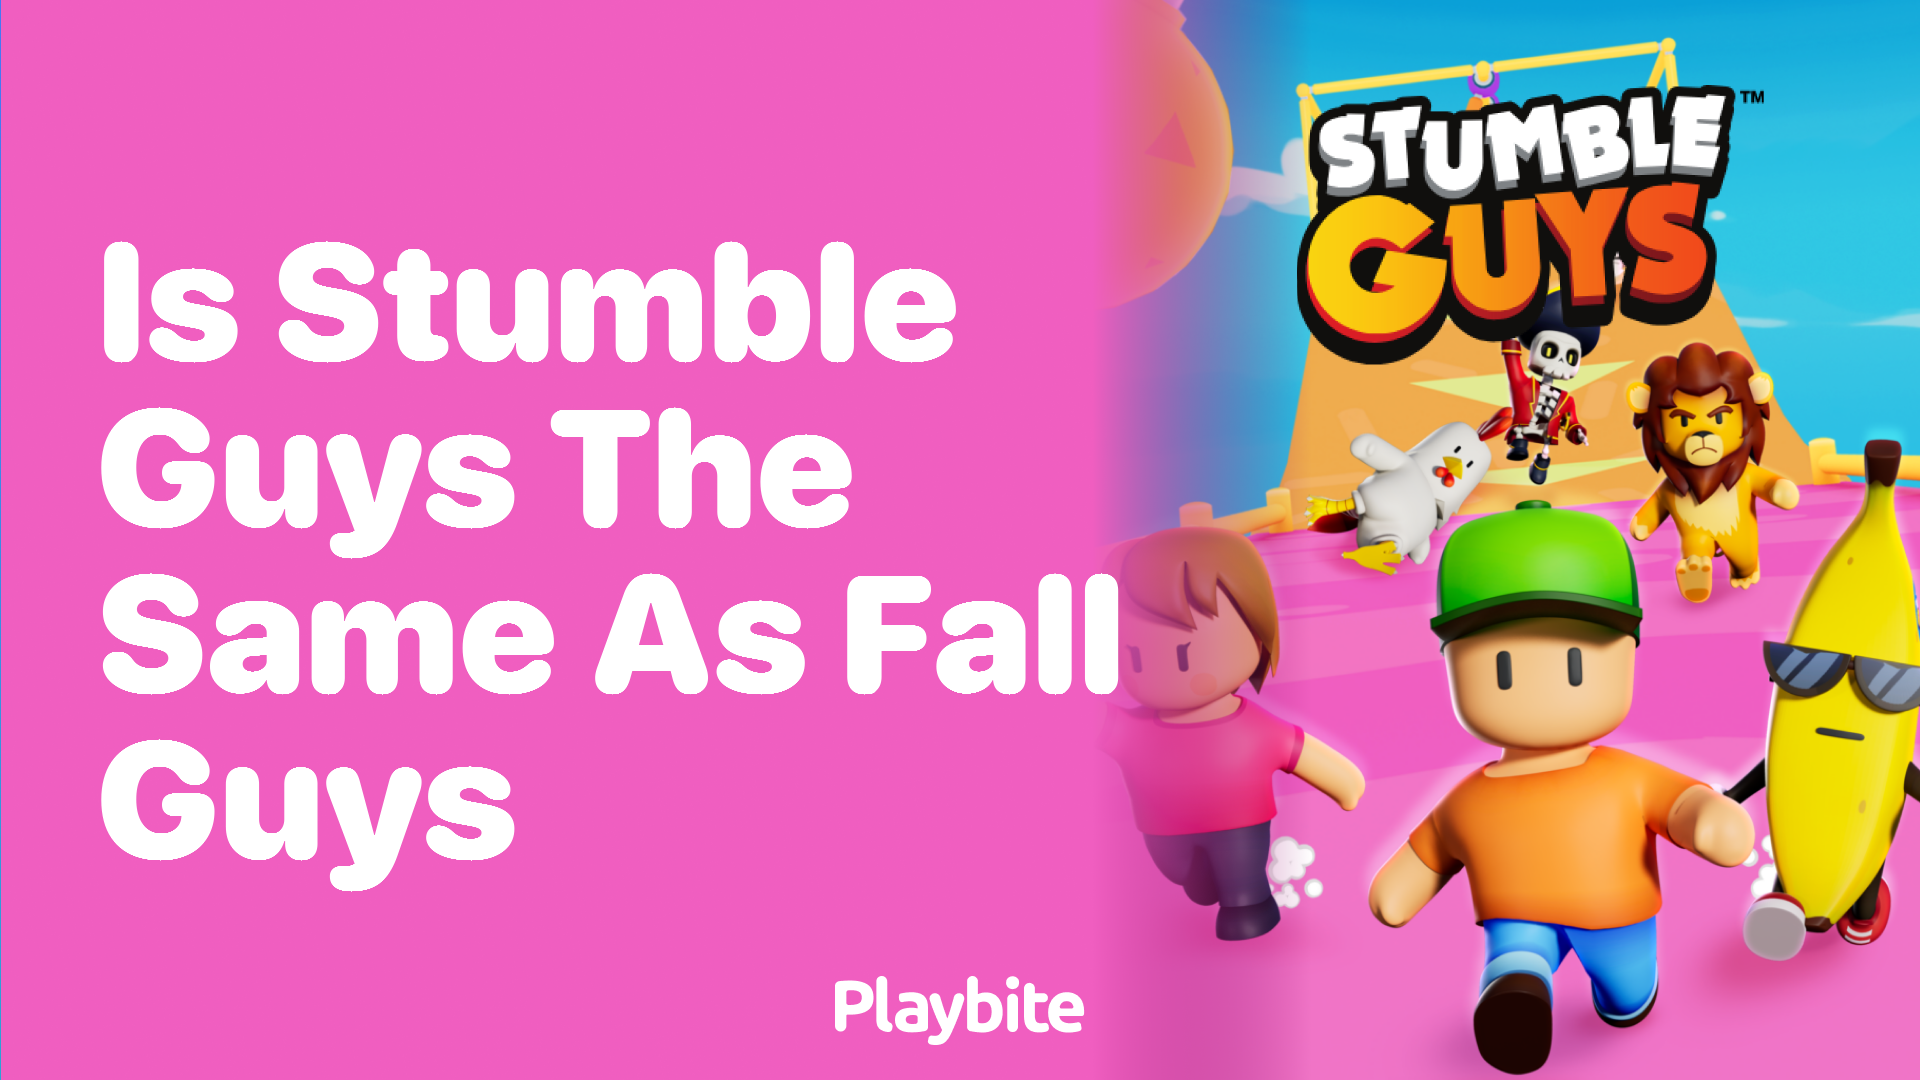 Is Stumble Guys the Same as Fall Guys?